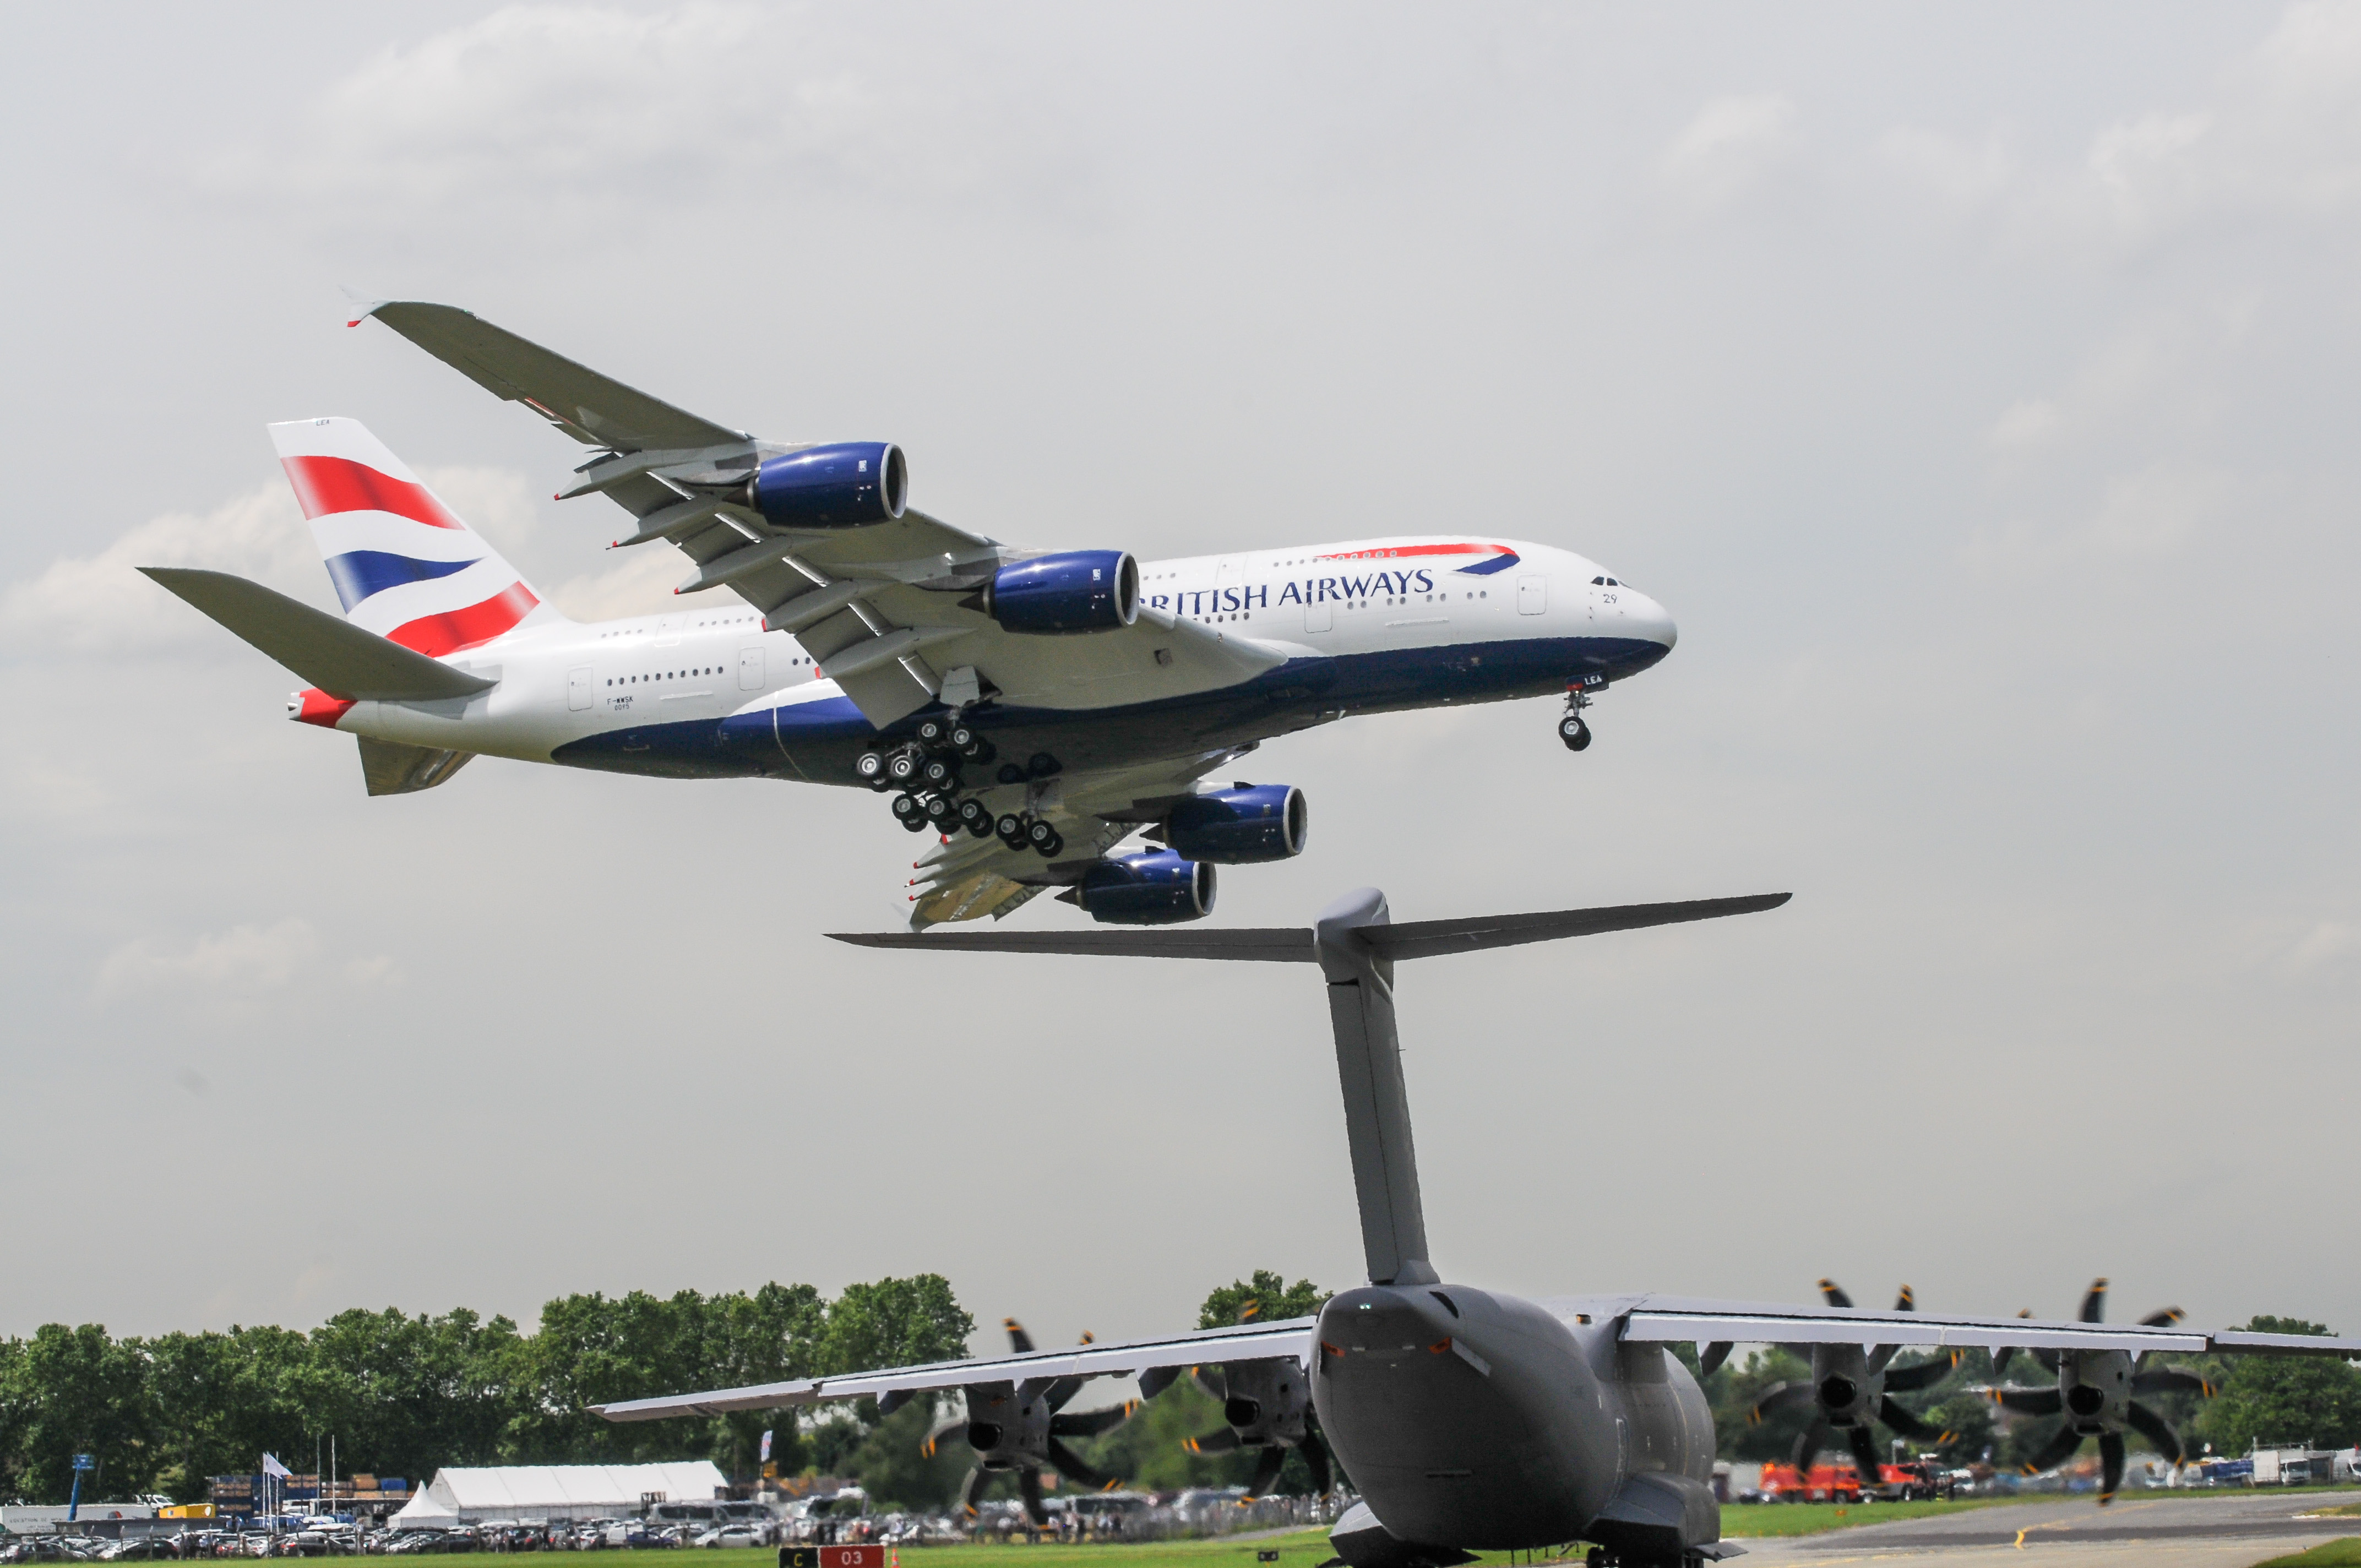 L'A400M décolle pendant que l'A380 atterrit.&nbsp;© Rémy Decourt